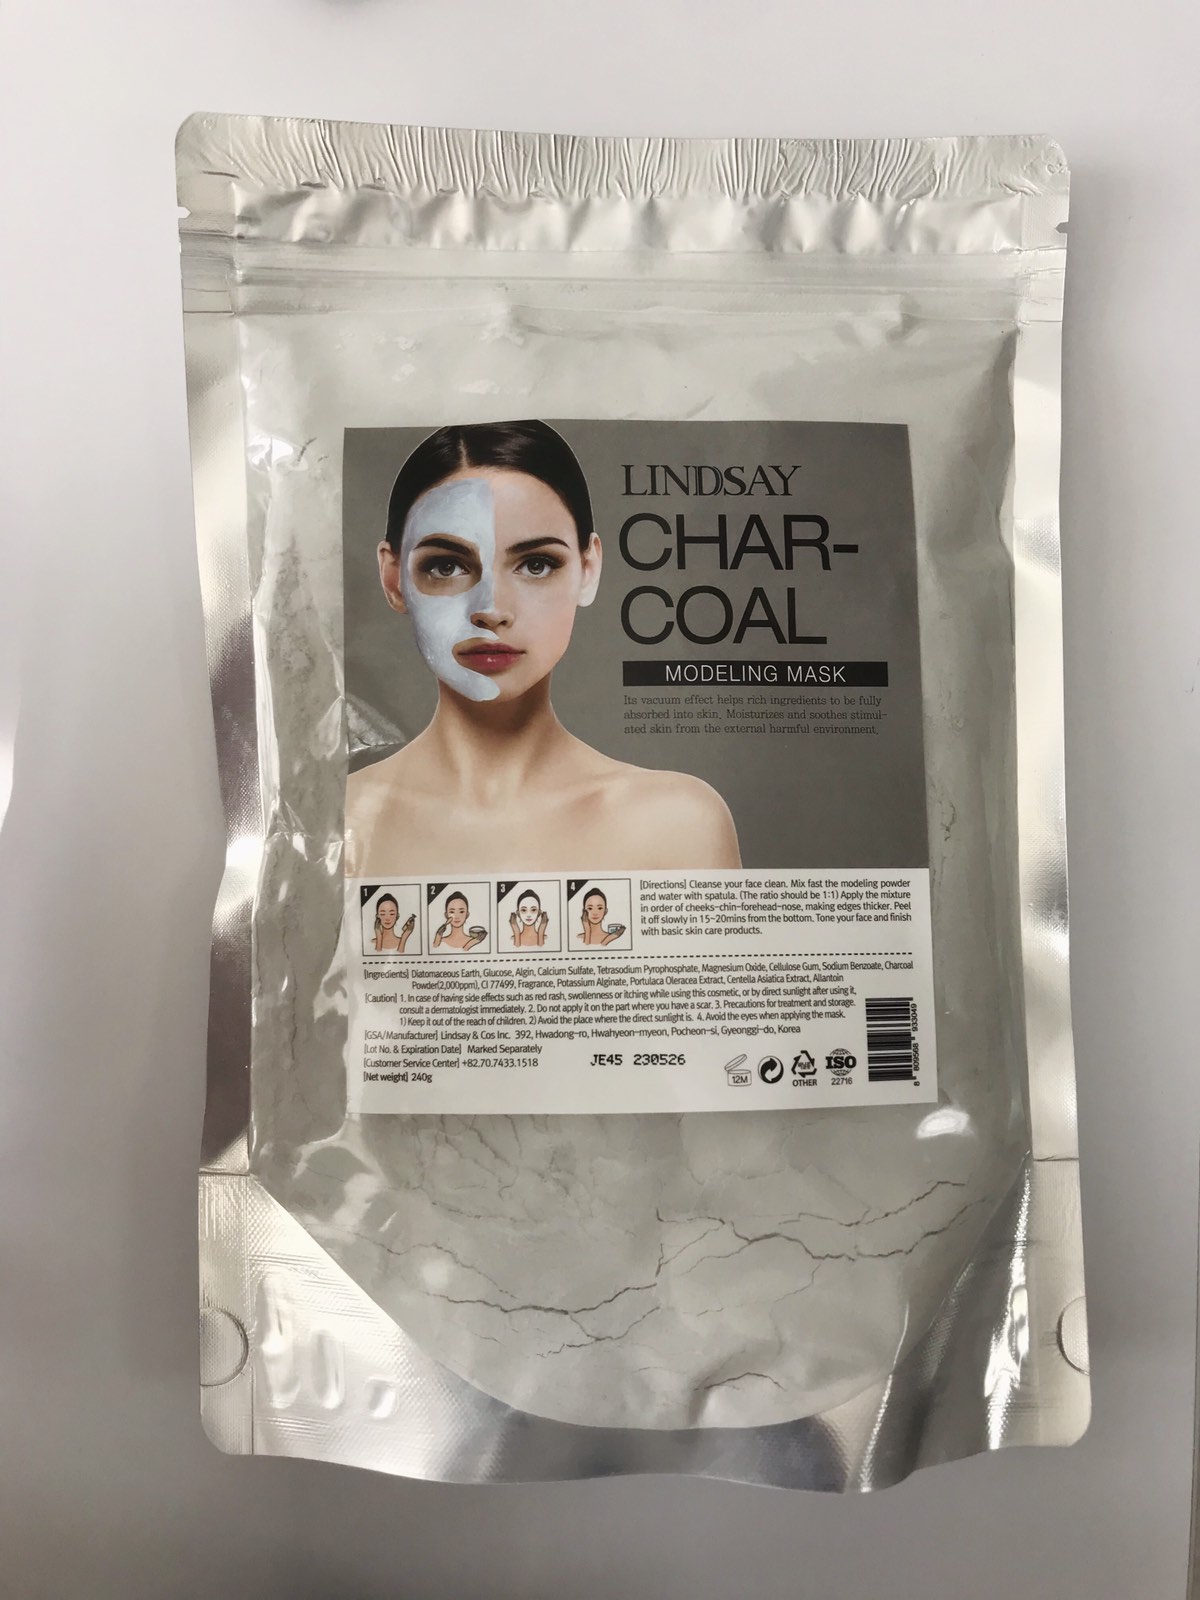 Lindsay, Charcoal Modeling Mask, 240g